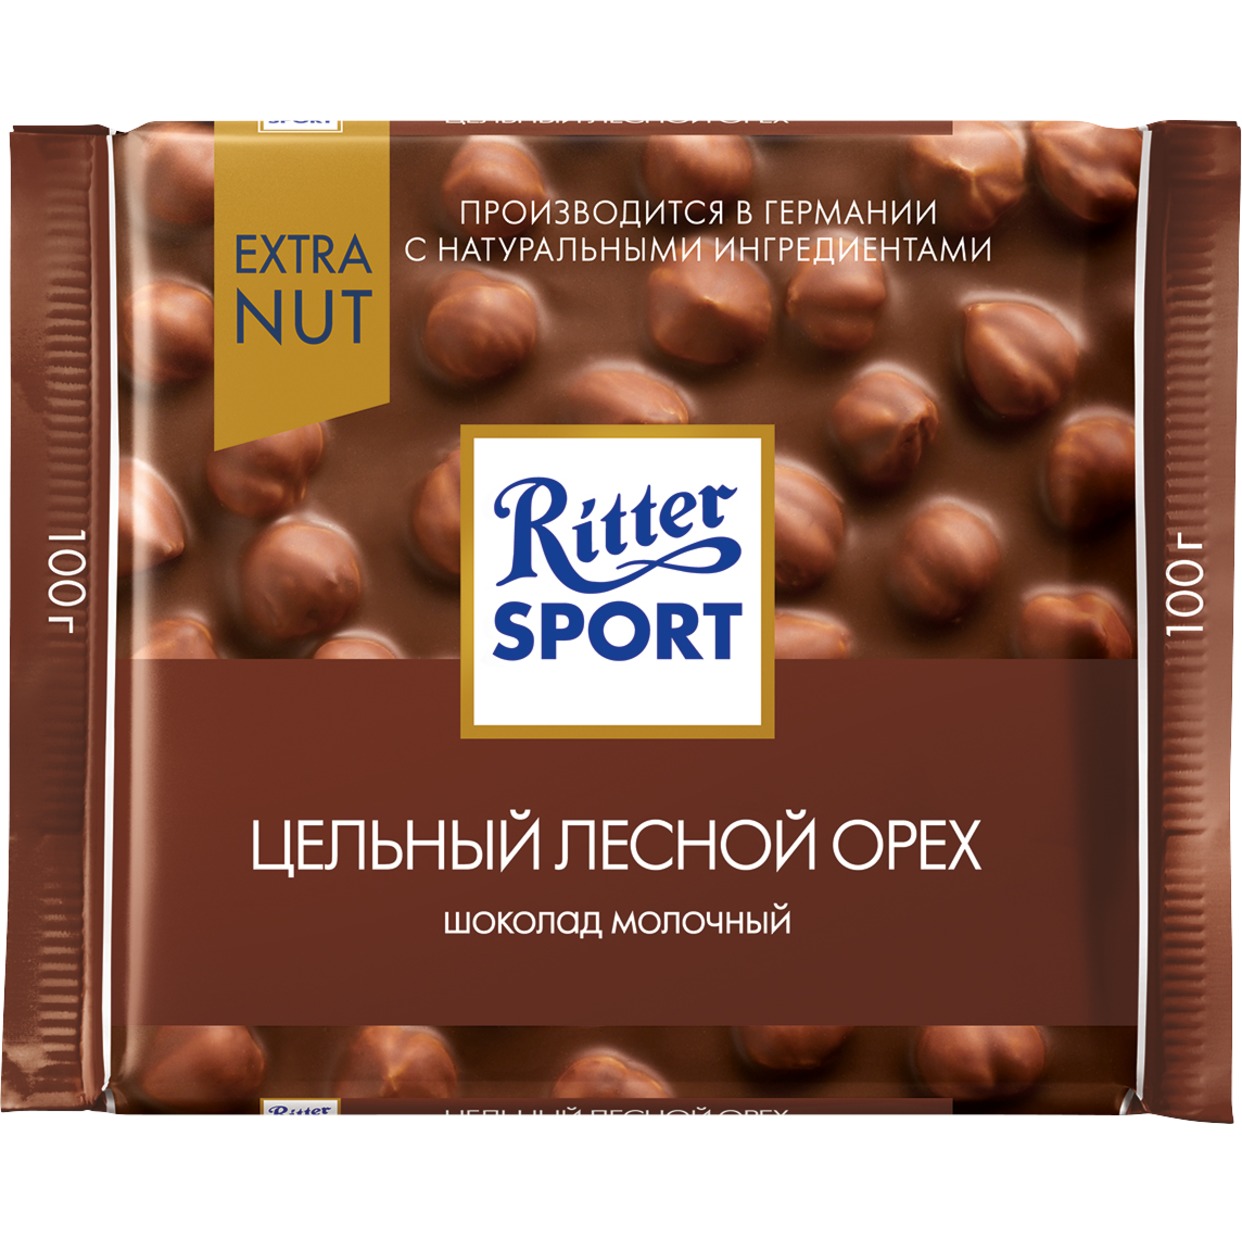 Шоколад Ritter Sport Молочный Цельный лесной орех 100г по акции в Пятерочке